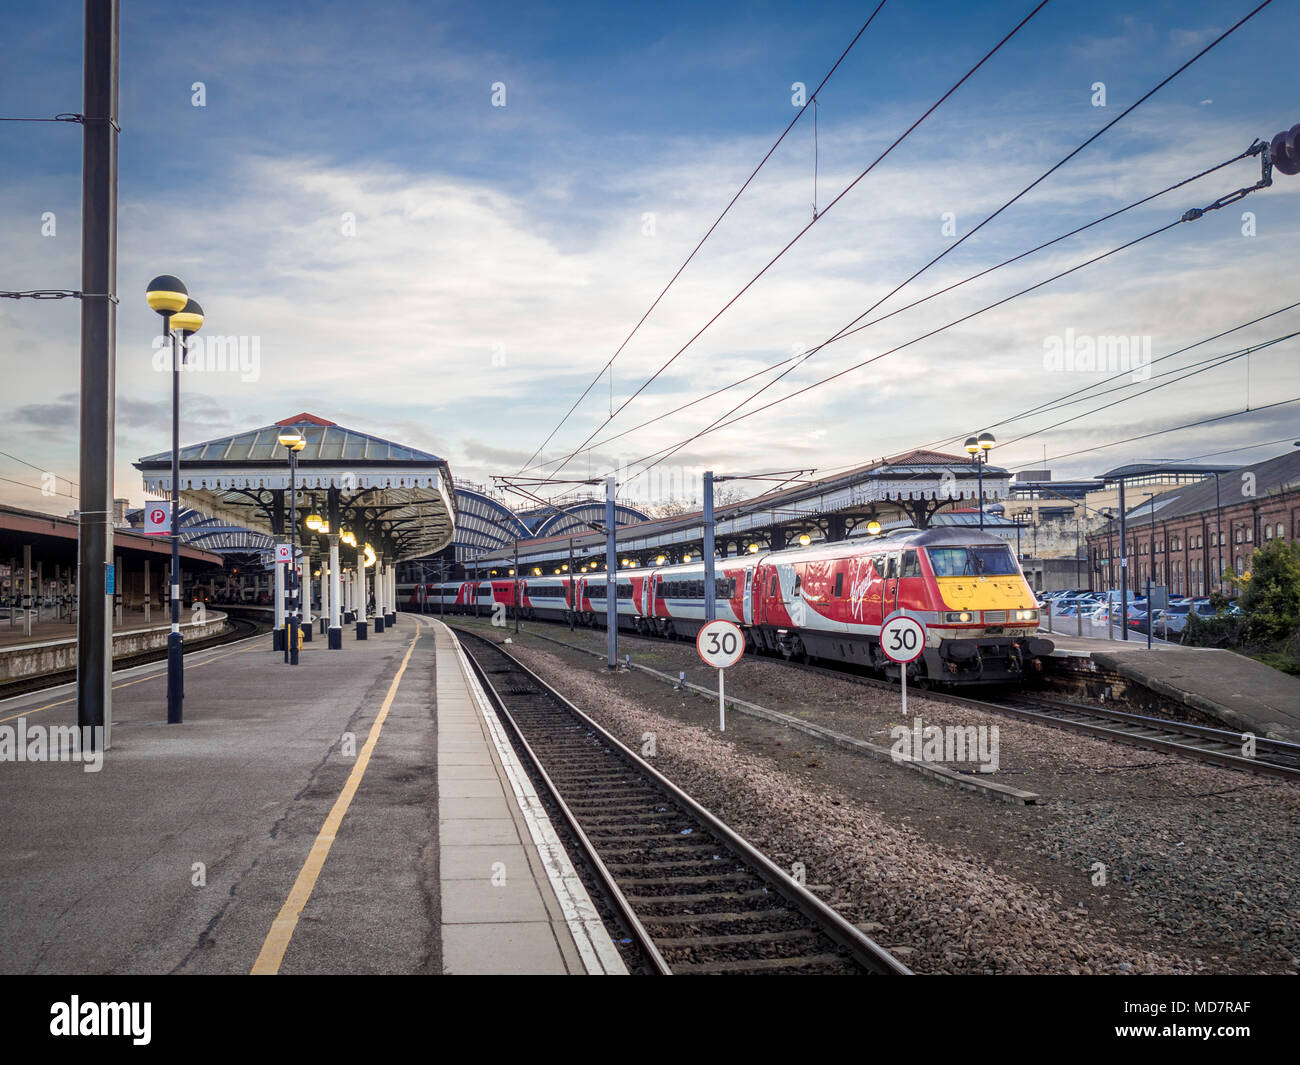 Virgin Trains motore ad alta velocità sulla via presso la stazione ferroviaria di York, UK. Foto Stock